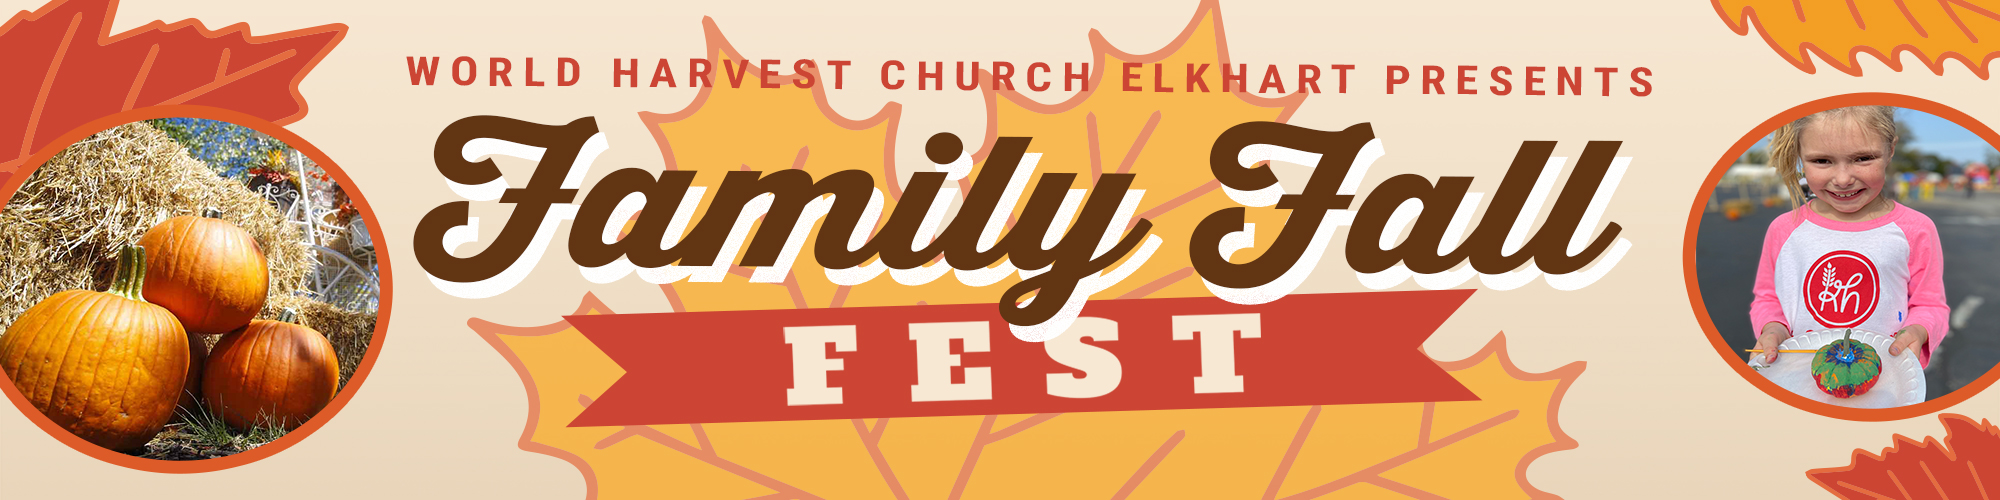 Wolrd Harvest Church Elkhart Presents Family Fall Fest